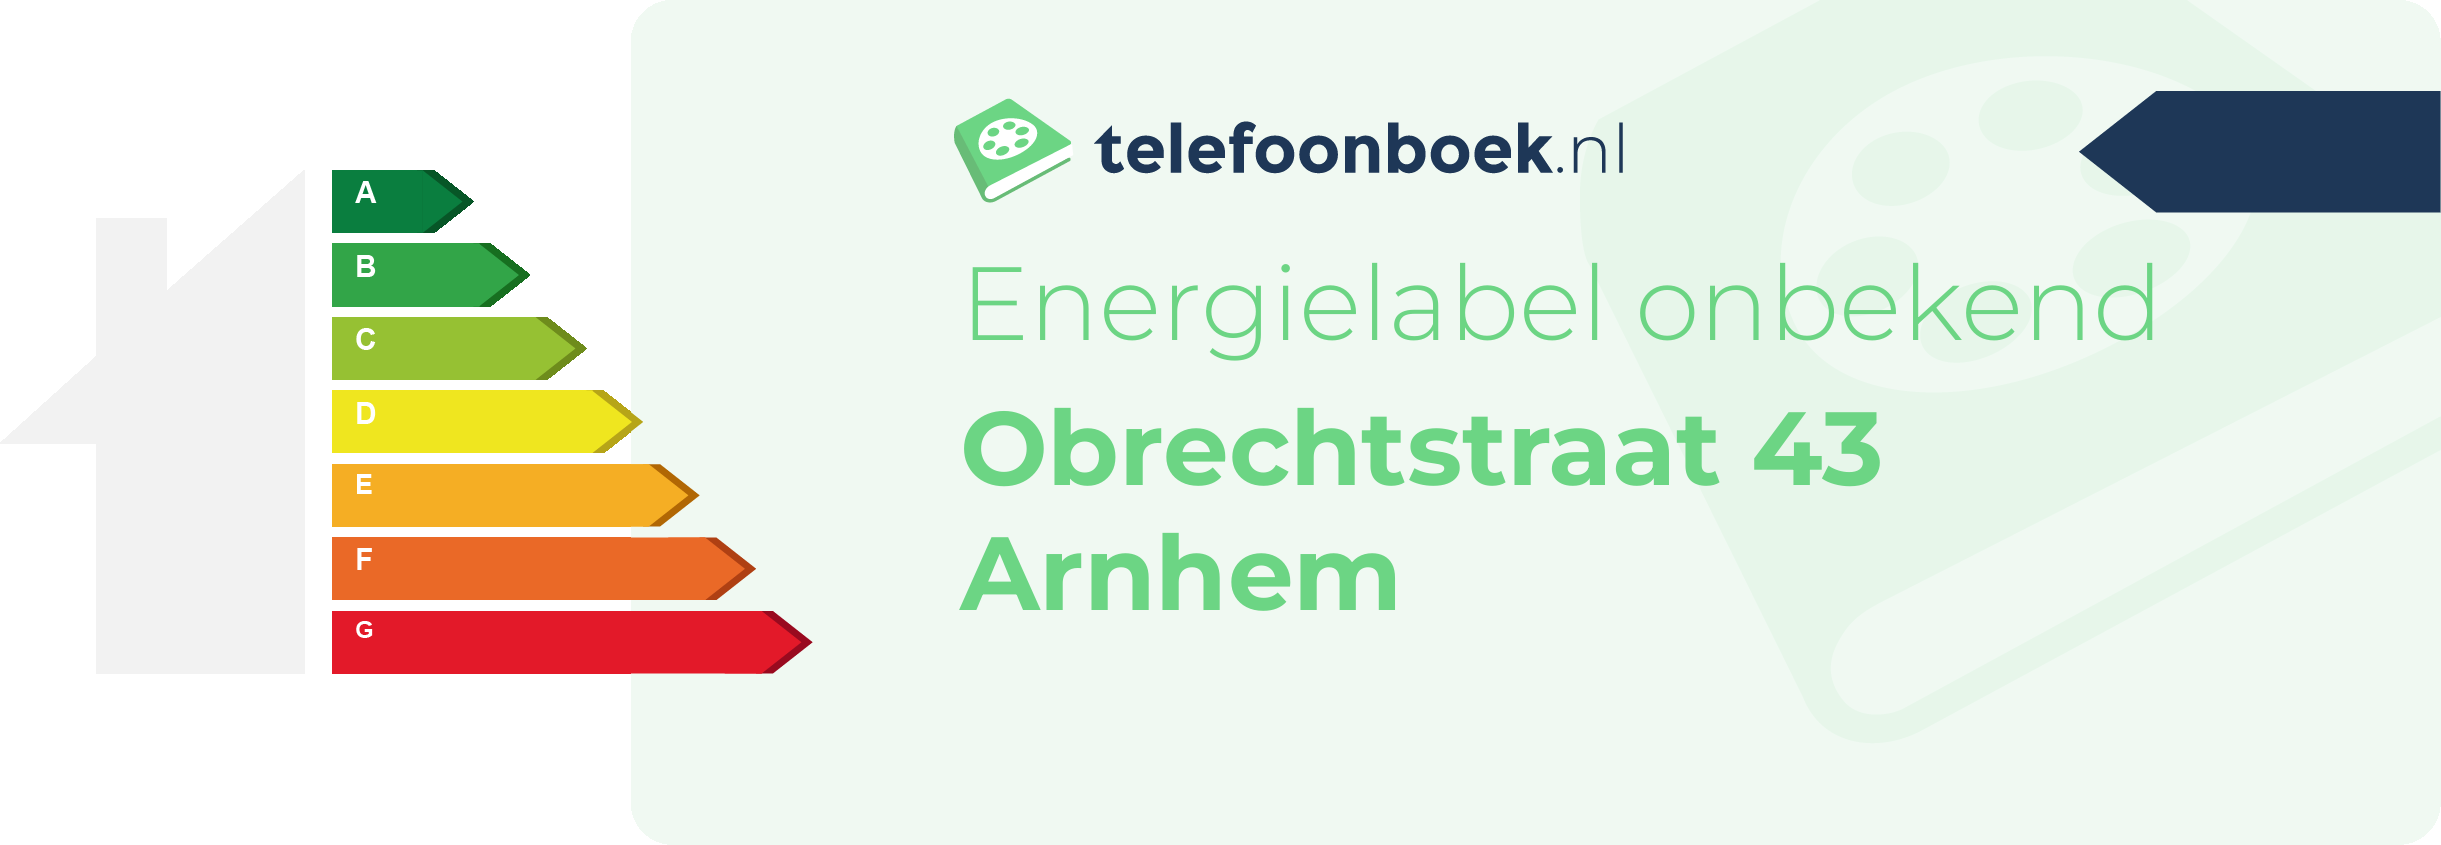 Energielabel Obrechtstraat 43 Arnhem